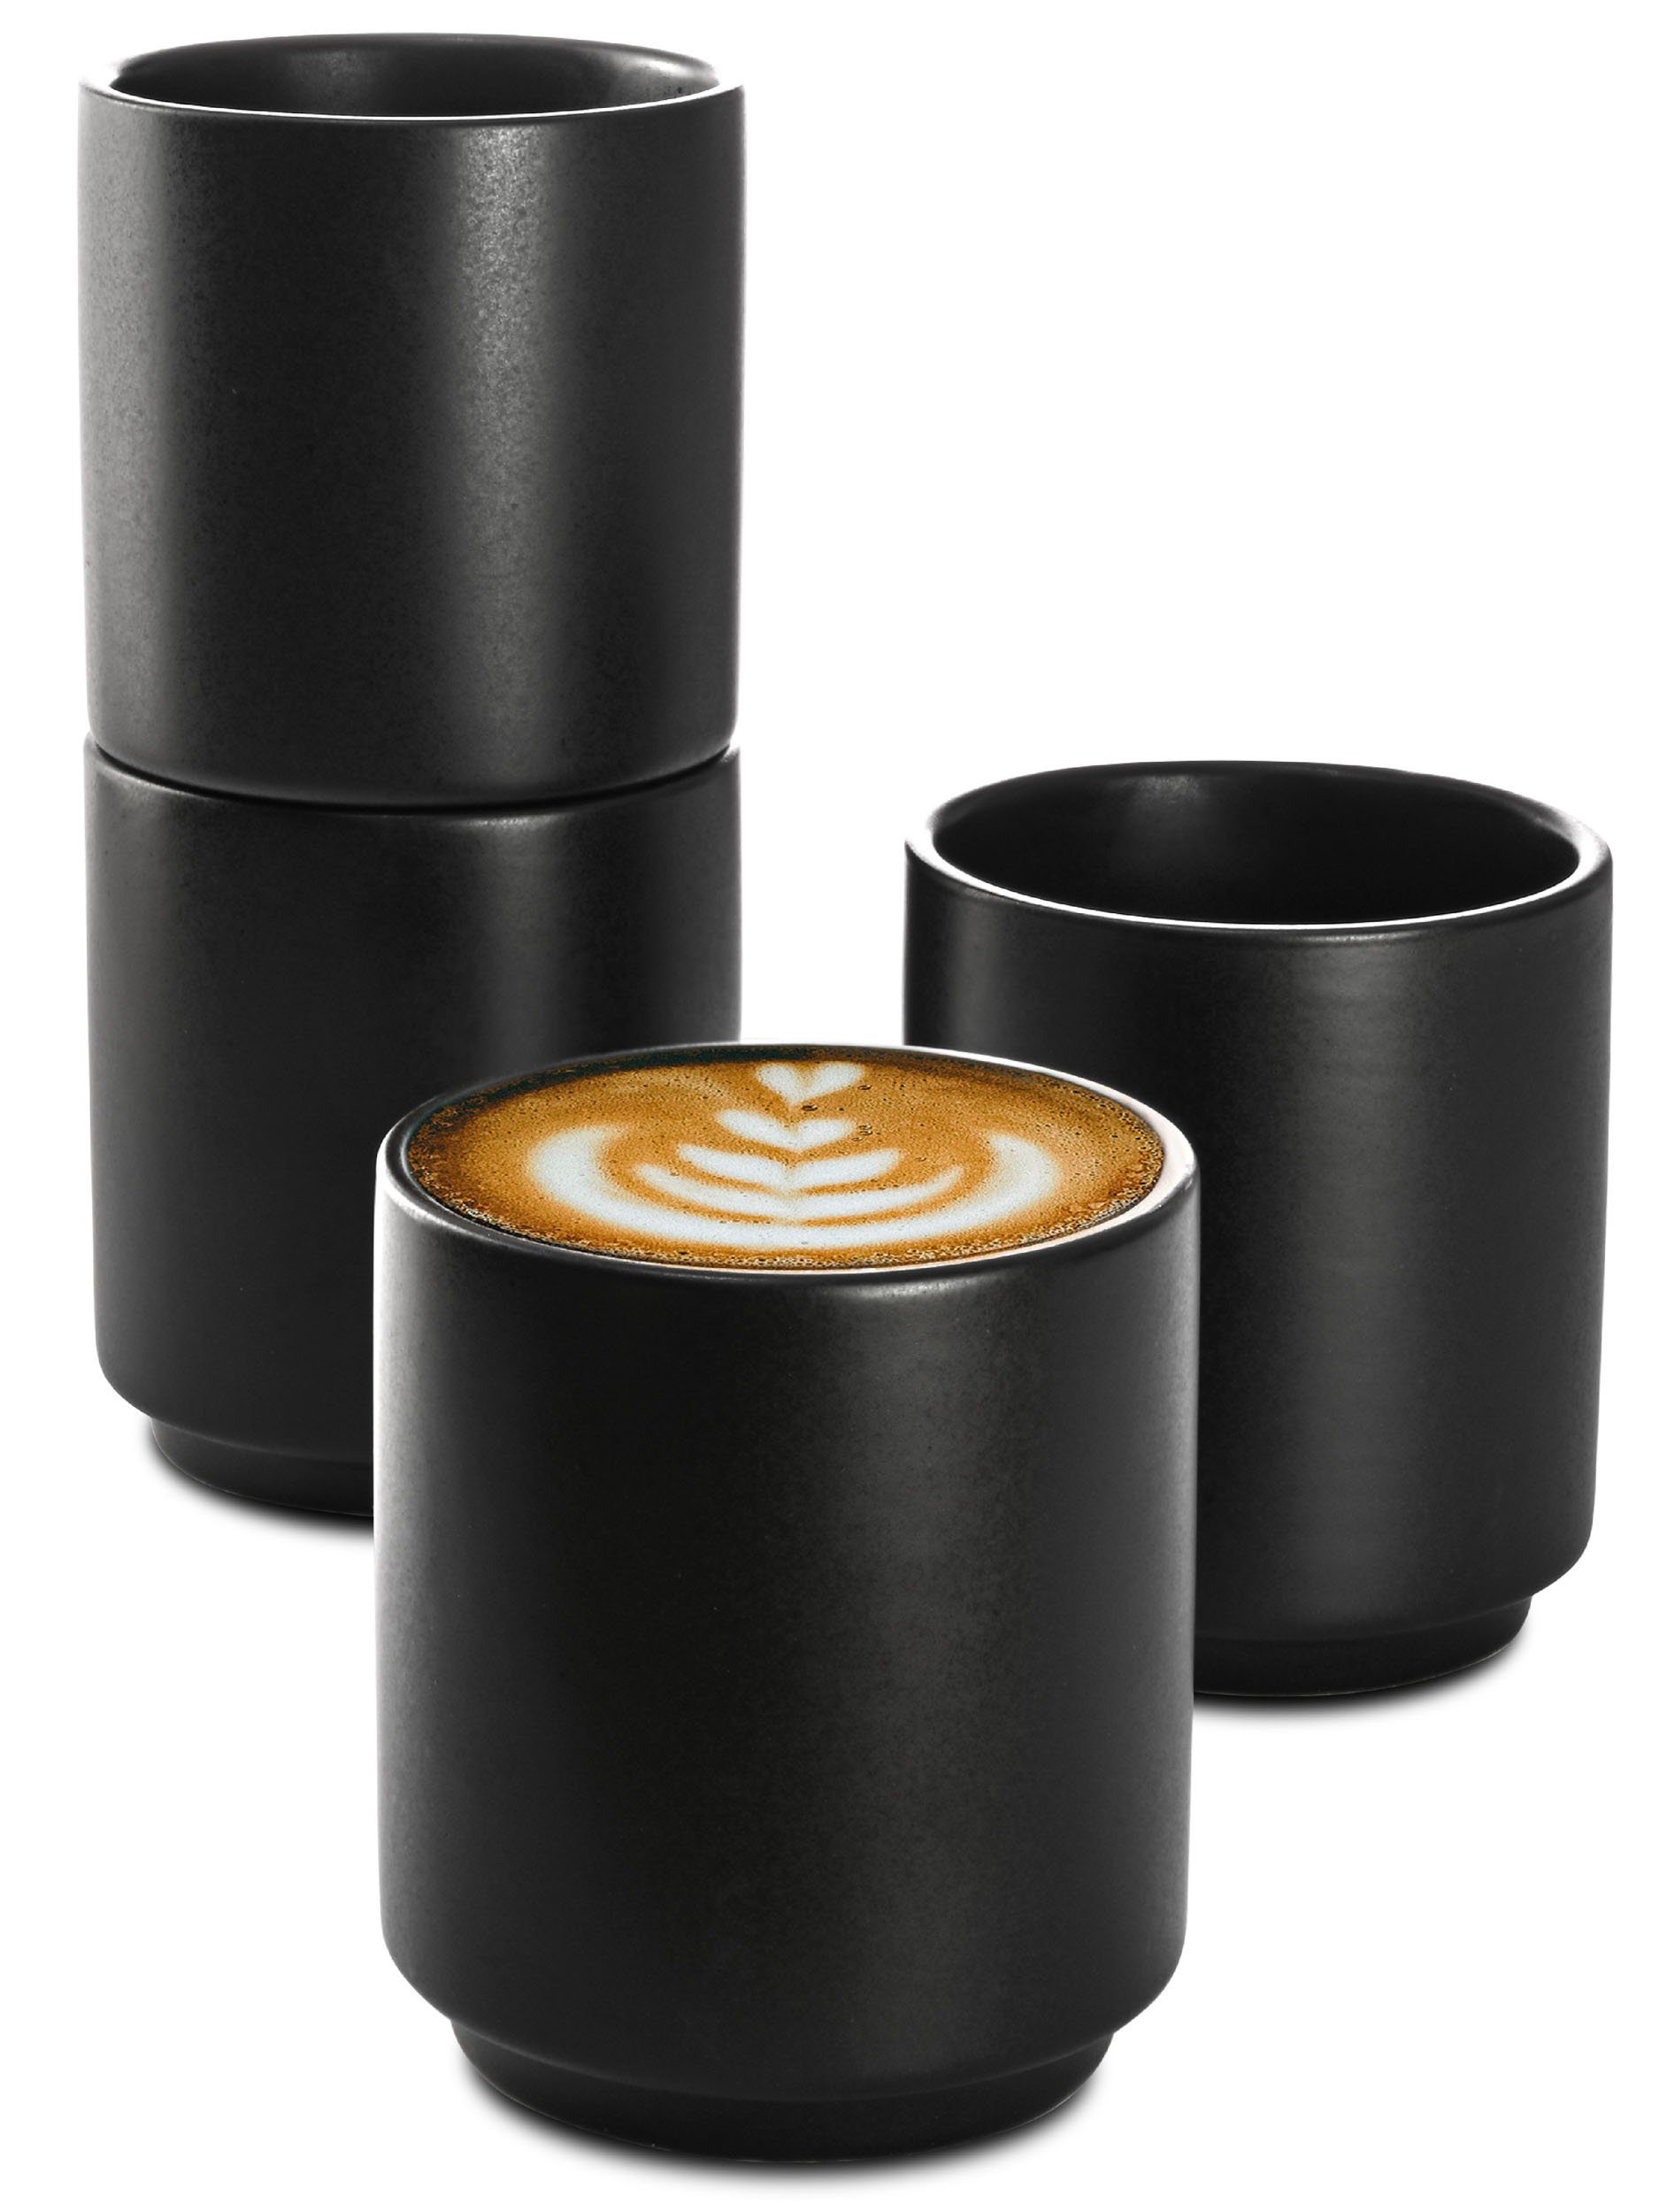 Cosumy Cappuccinotasse 4er Set Cappuccino Keramik Kaffee Tassen Groß 200 ml ohne Henkel, Keramik, Hitzebeständiges Stapelbares Design - Entworfen für Latte Art - 200 ml Schwarz Matt